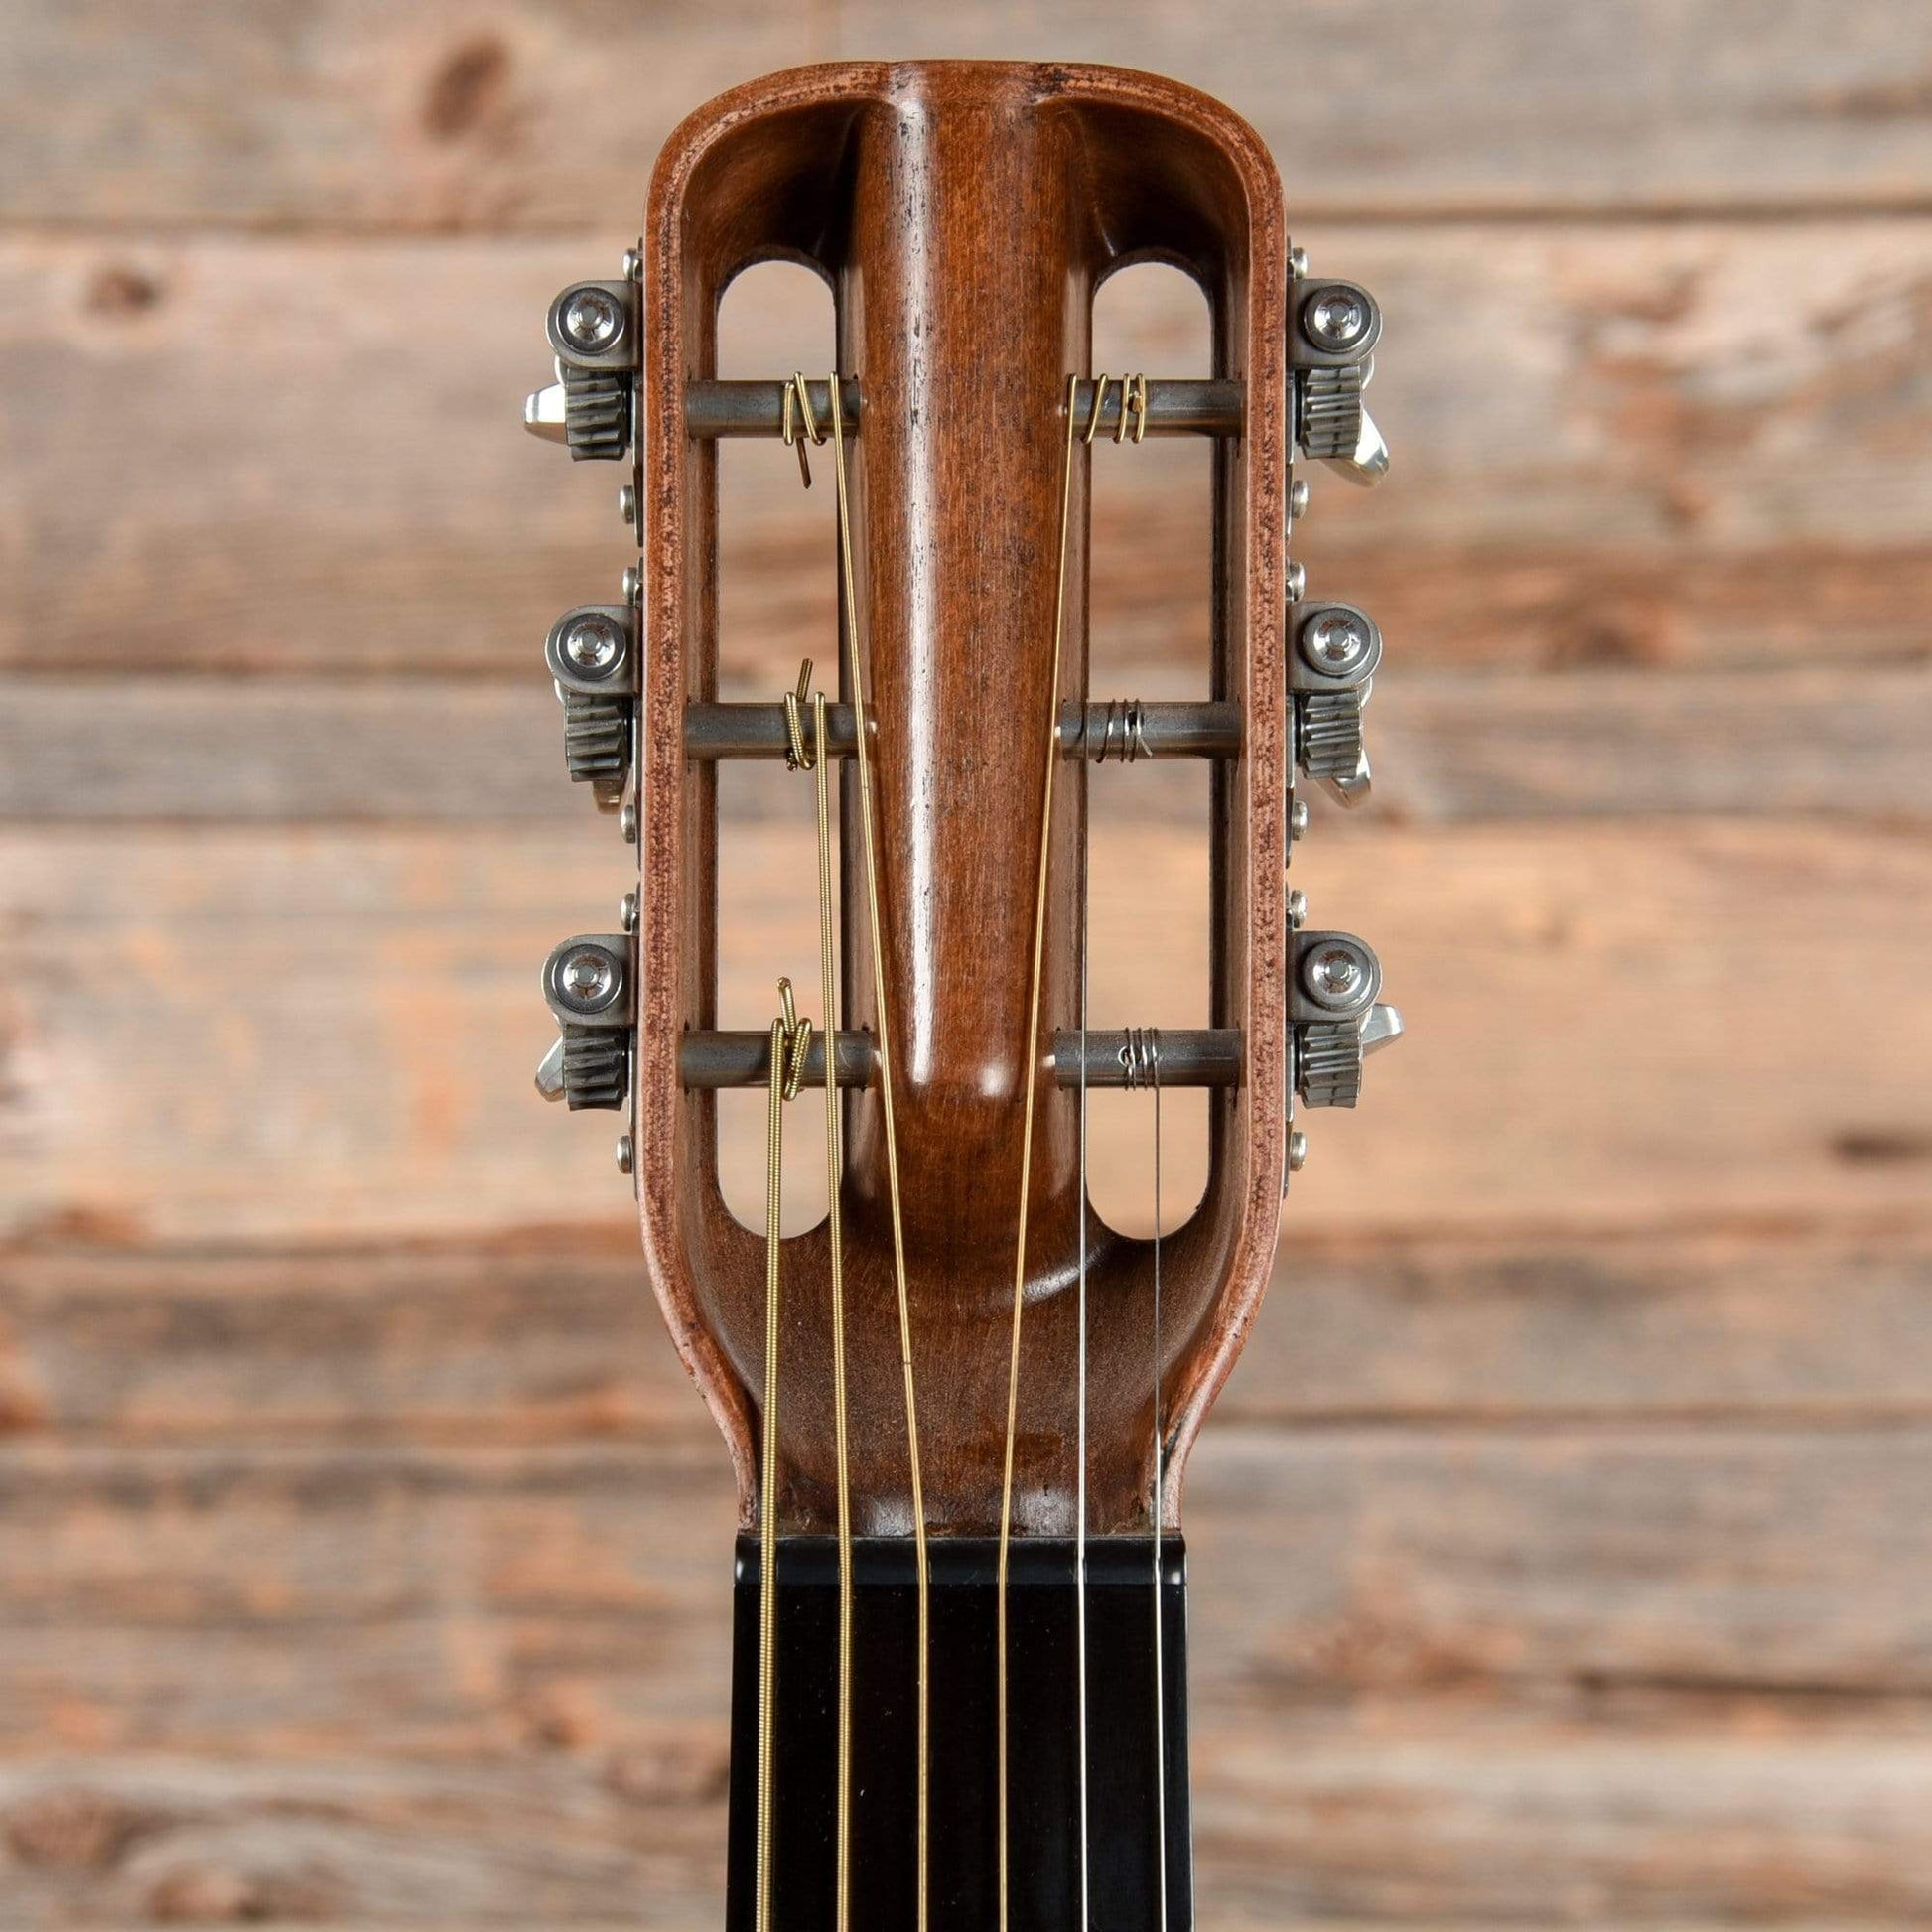 Blackbird El Capitan Natural 2015 Acoustic Guitars / Concert